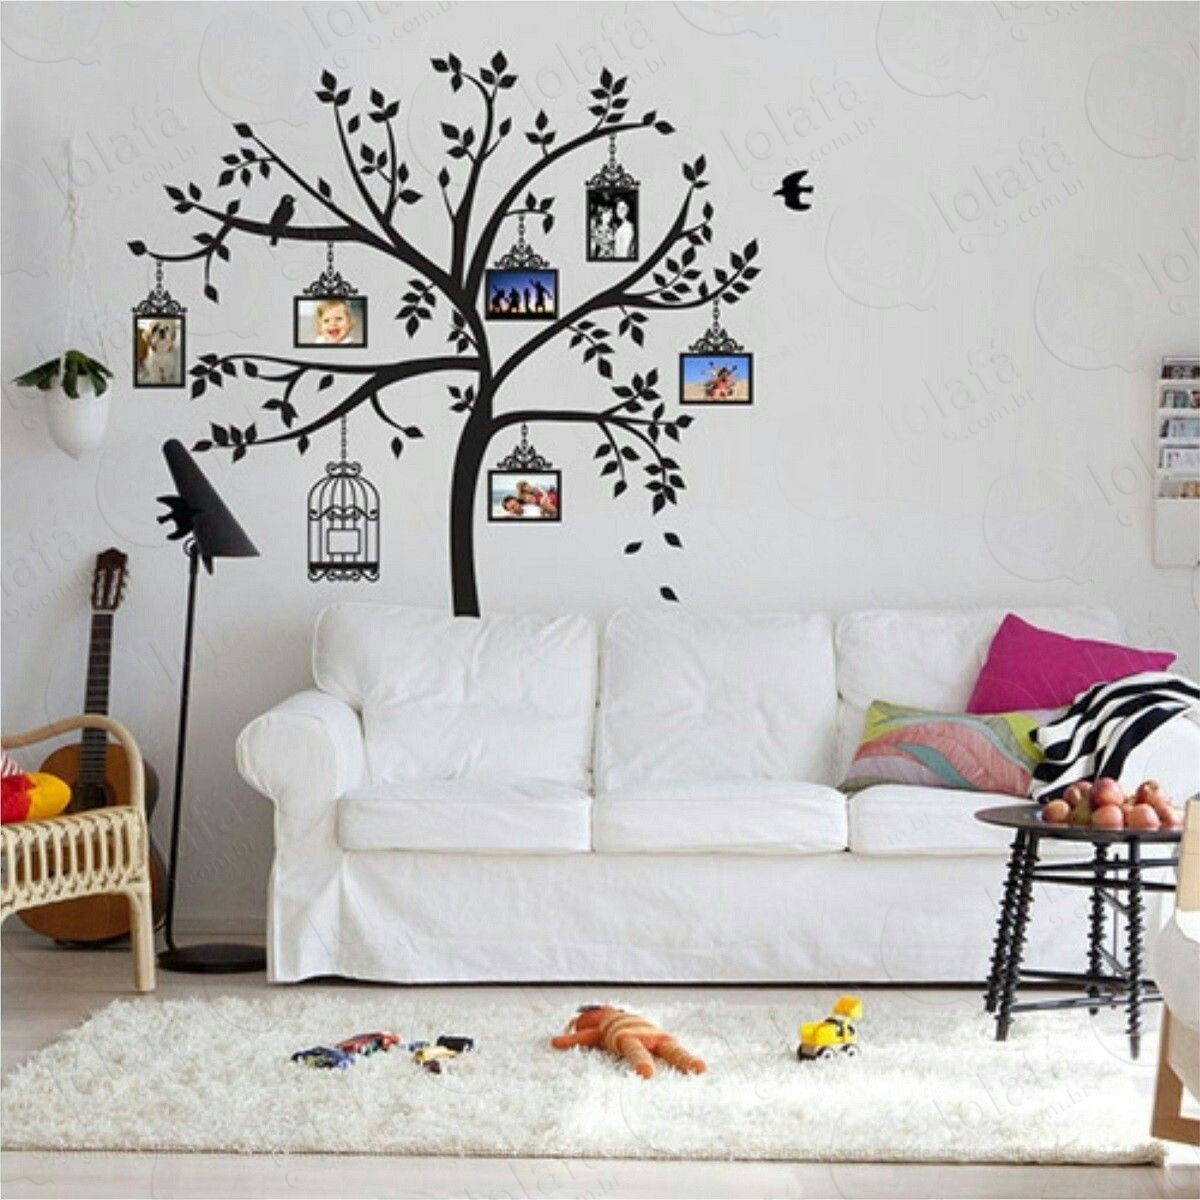 adesivo decorativo Árvore genealógica fotos da família 2metr mod:880